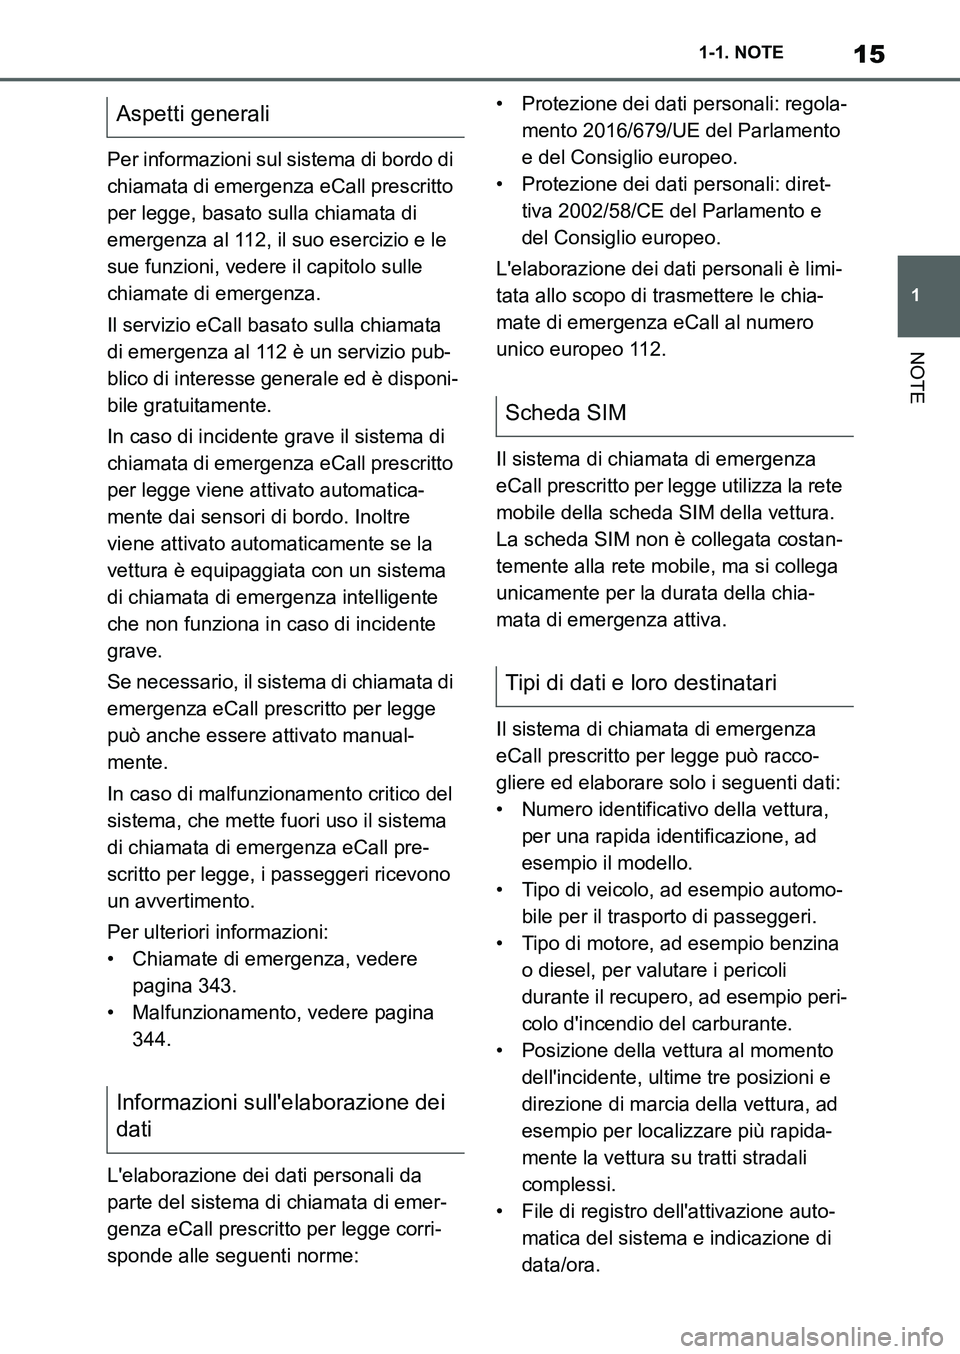 TOYOTA SUPRA 2022  Manuale duso (in Italian) 15
1 1-1. NOTE
NOTE
Per informazioni sul sistema di bordo di 
chiamata di emergenza eCall prescritto 
per legge, basato sulla chiamata di 
emergenza al 112, il suo esercizio e le 
sue funzioni, vedere